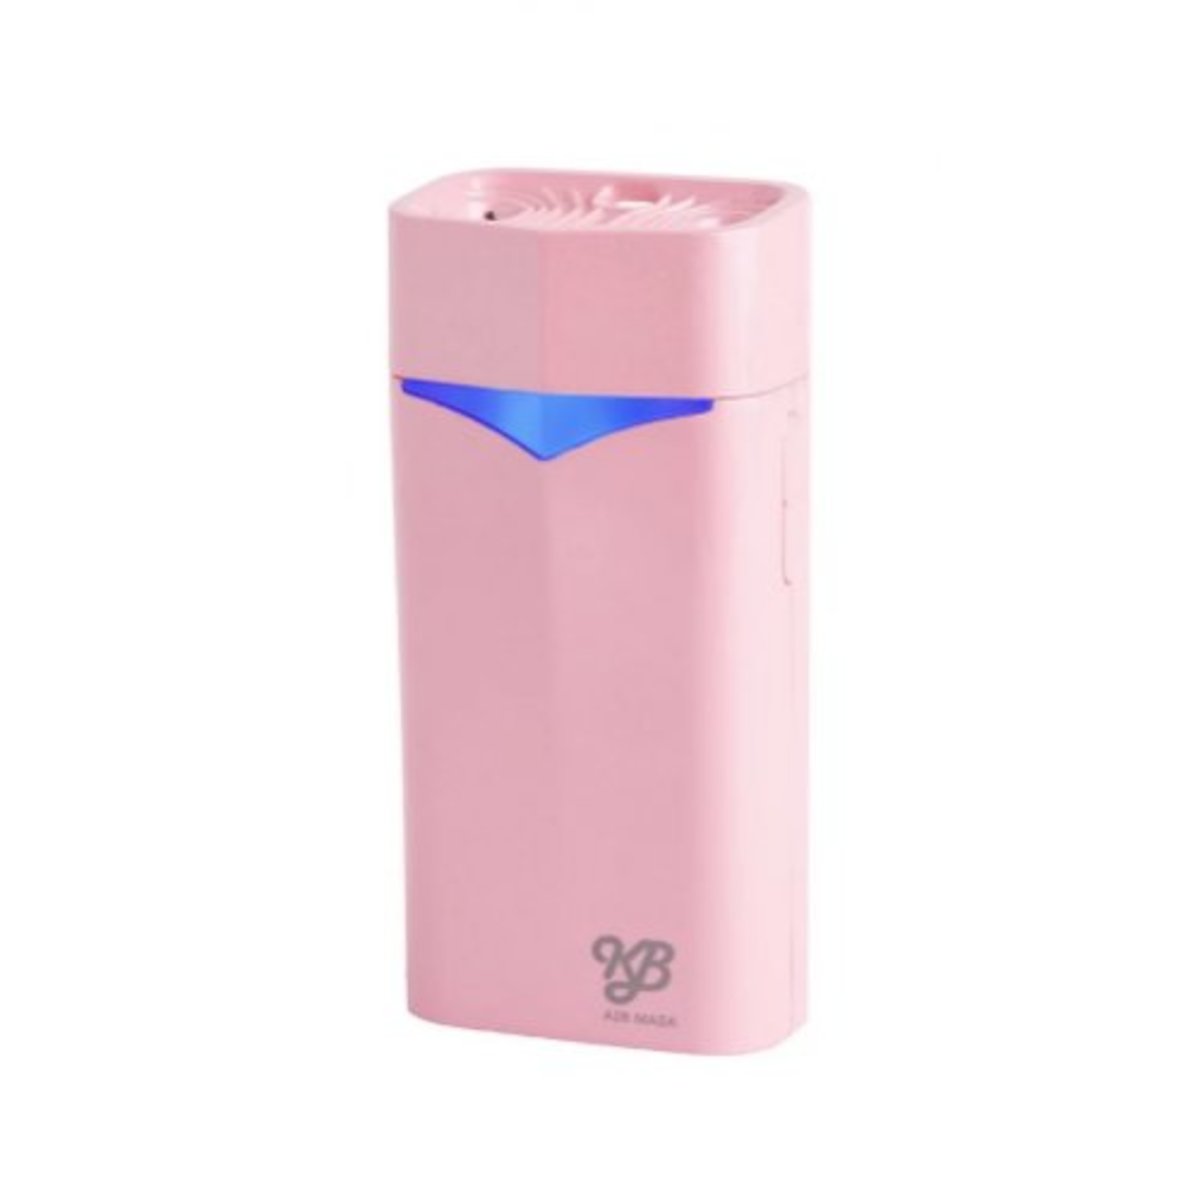 KB - Air Mask 雙排放離子隨身空氣清淨機 - 粉紅色【日本製造。香港行貨】